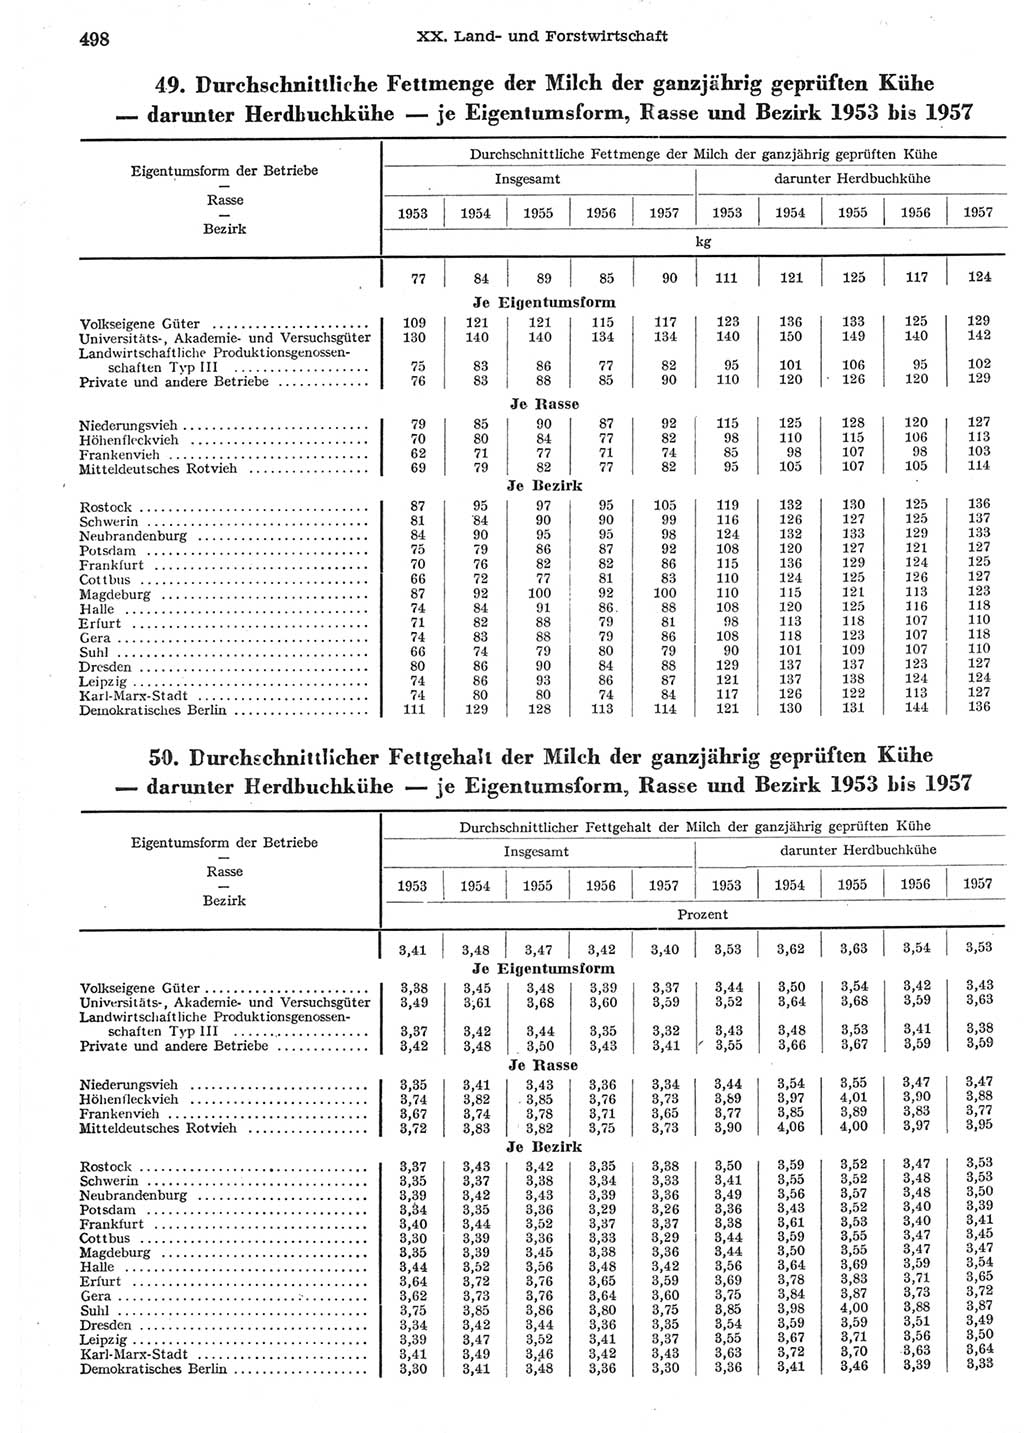 Statistisches Jahrbuch der Deutschen Demokratischen Republik (DDR) 1958, Seite 498 (Stat. Jb. DDR 1958, S. 498)